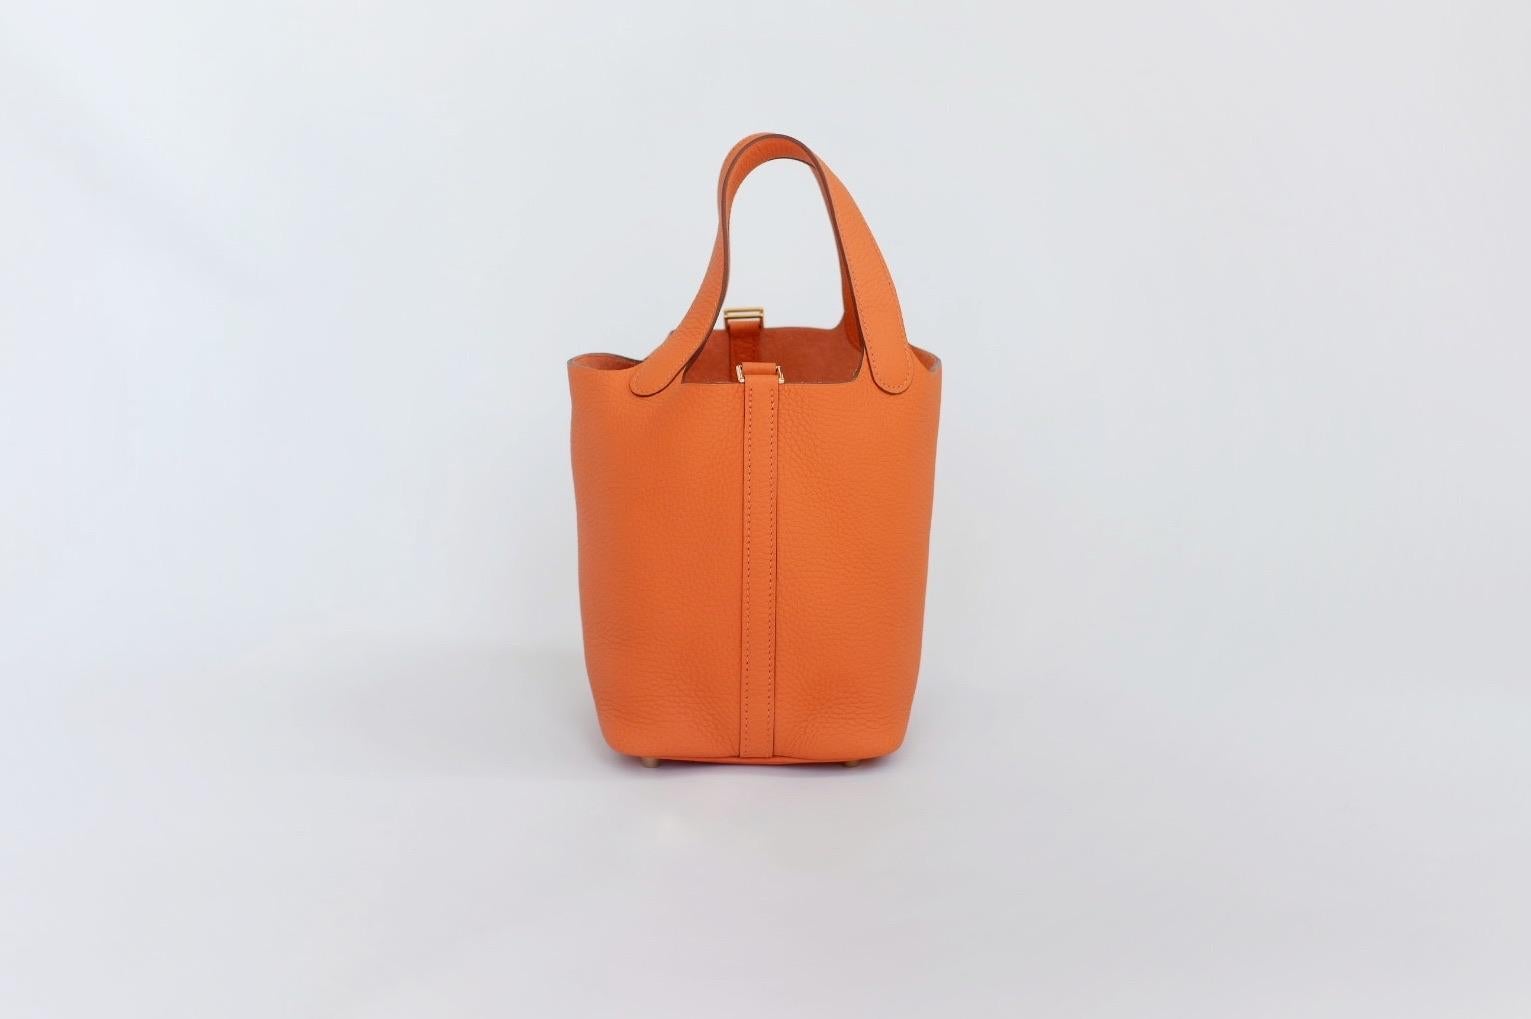 Hermes Picotin 18cm Minium Orange en cuir d'Epsom avec des accessoires dorés (GHW). Brand New est livré avec la boîte et l'ensemble complet, les accessoires et le reçu.